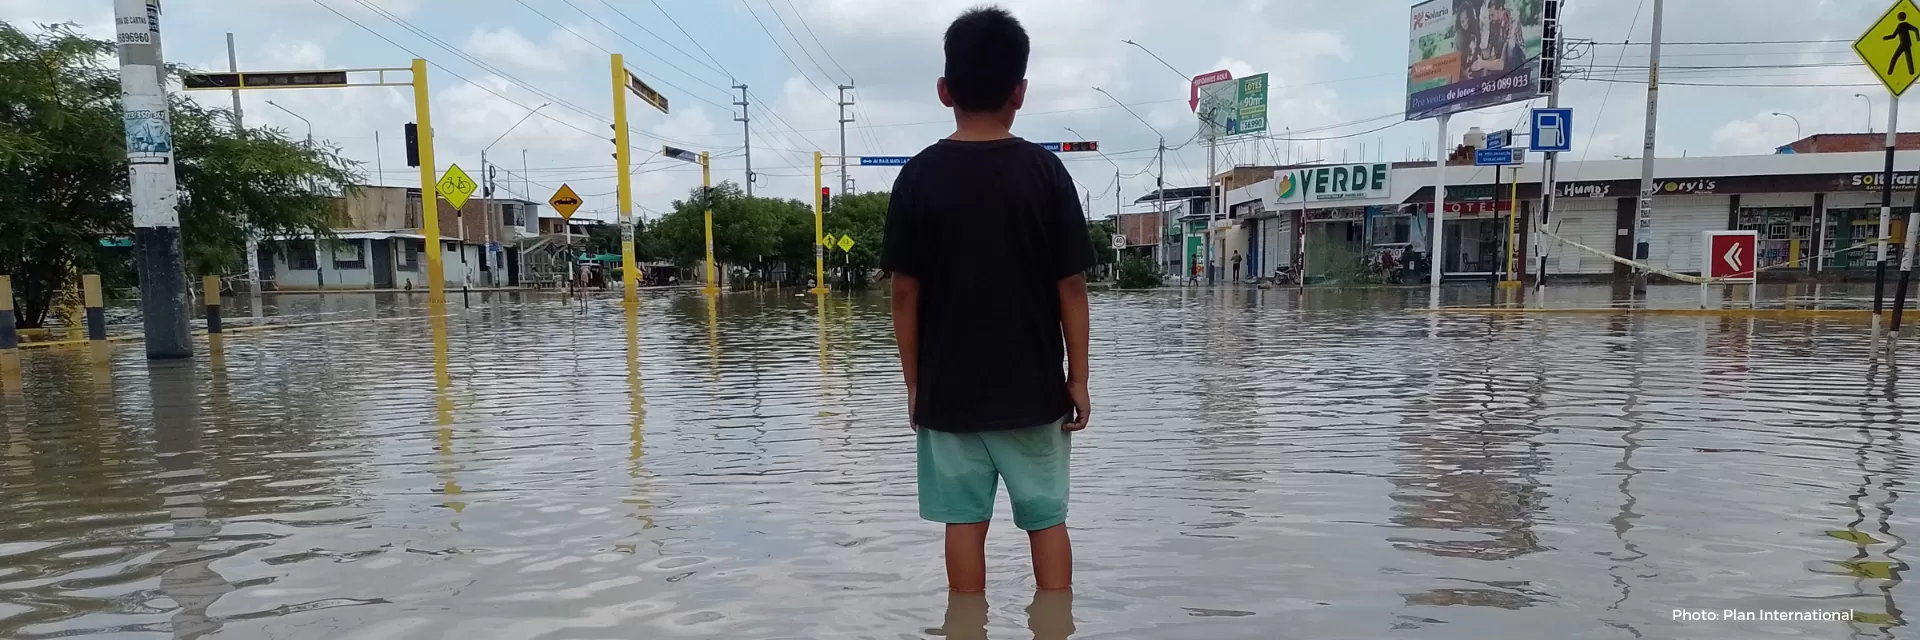 child standing in floods in Peru